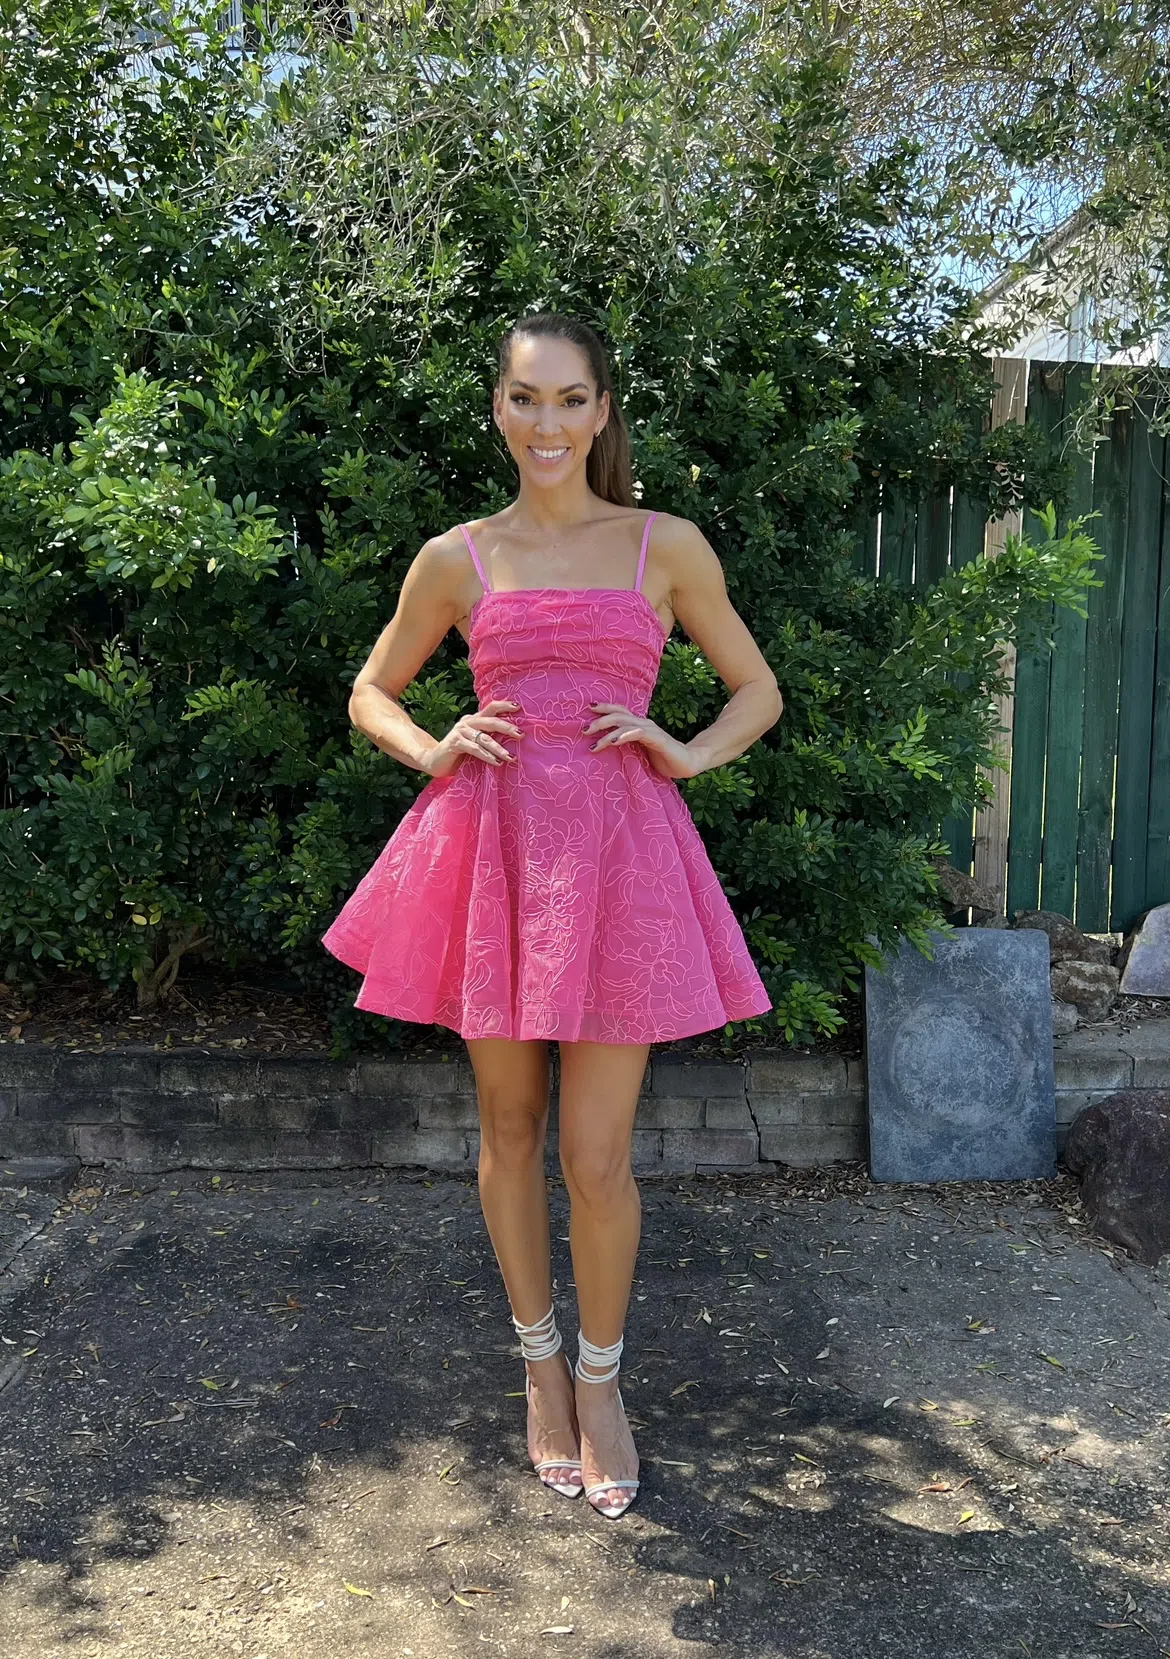 Evangeline Cornelli Mini Dress, Protea Pink